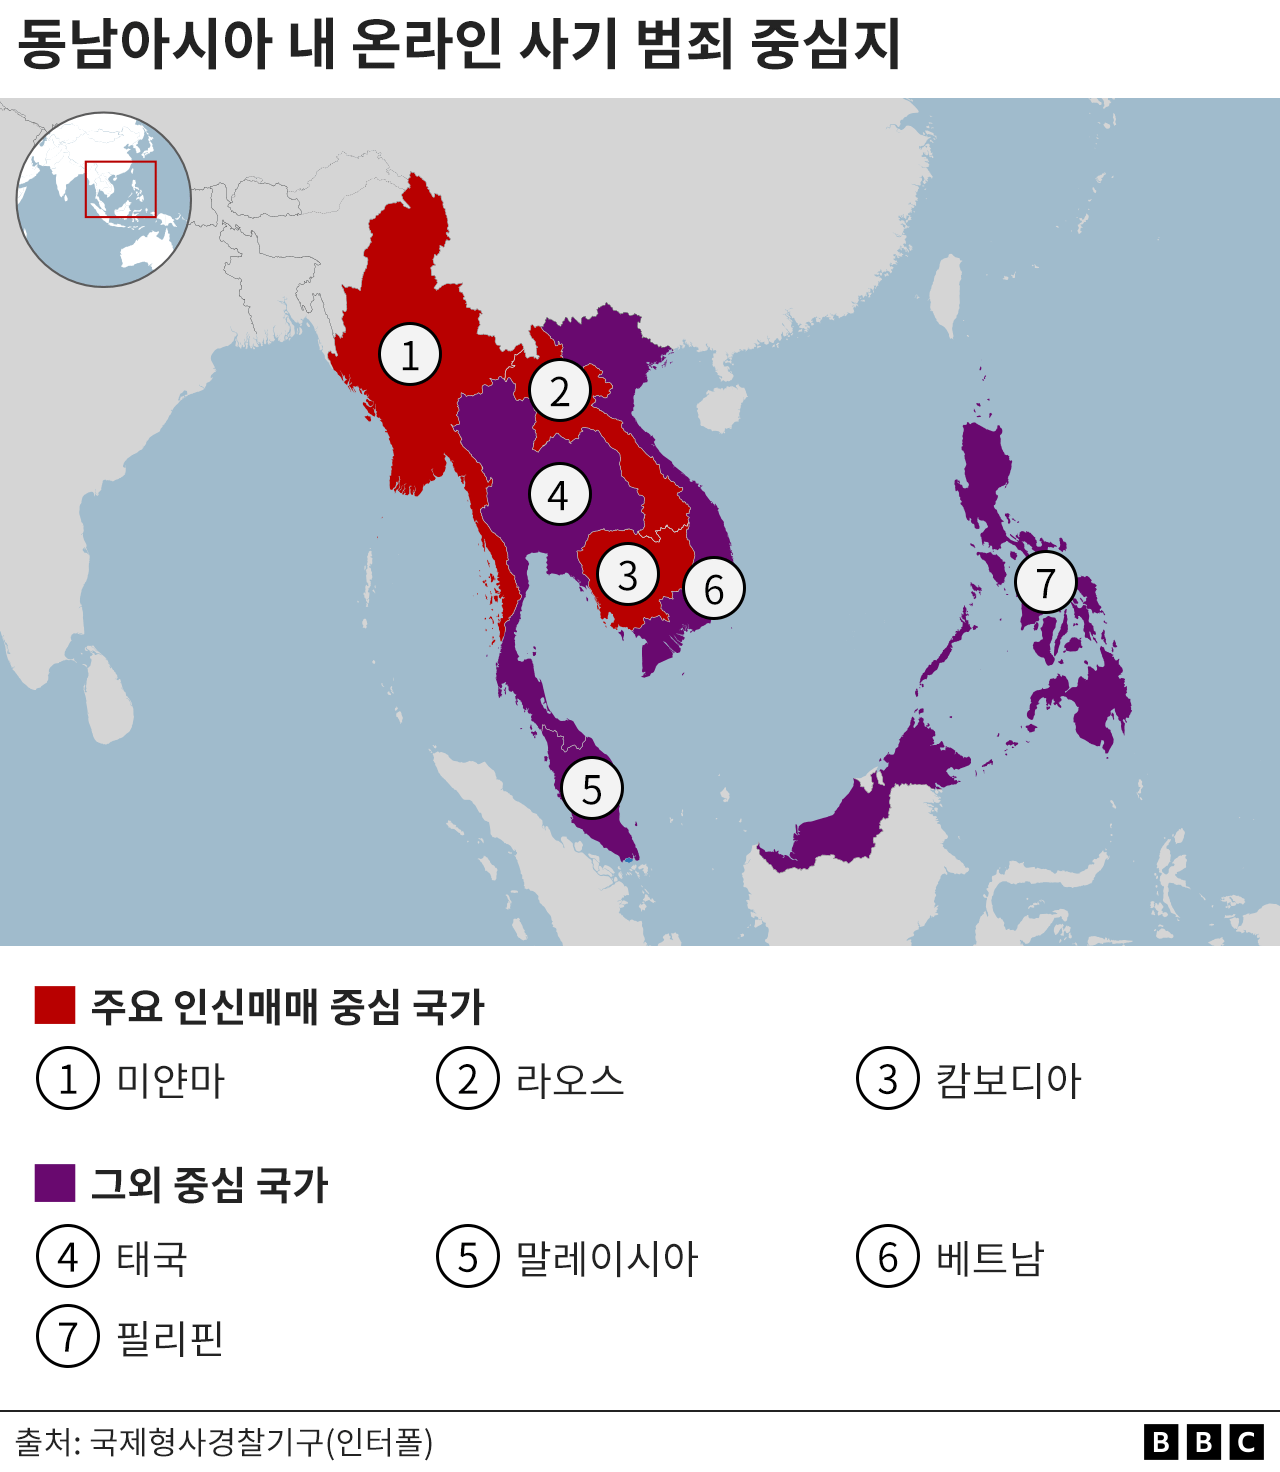 미얀마, 라오스, 캄보디아 등 주요 인신매매 중심 국가가 표시된 지도